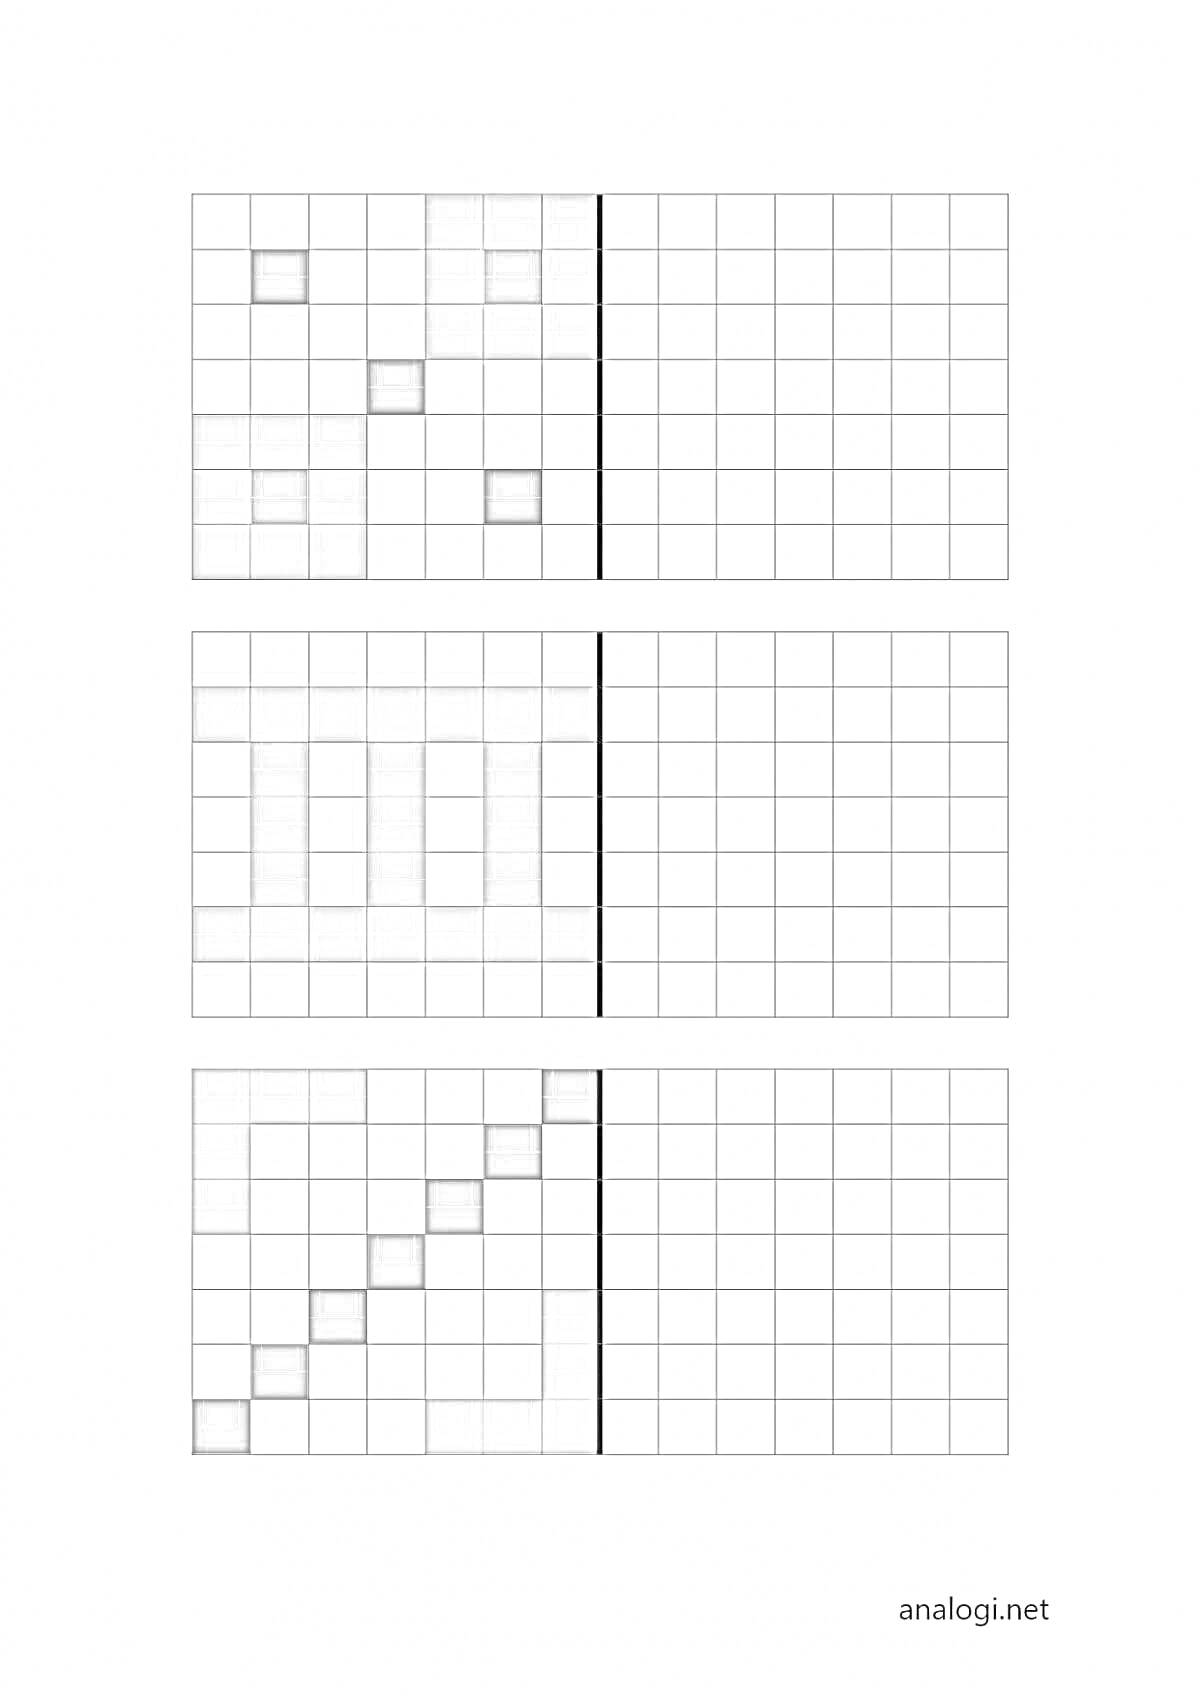 Раскраска Раскраски по клеточкам с геометрическими узорами (крест, вертикальные полосы, диагональная линия)